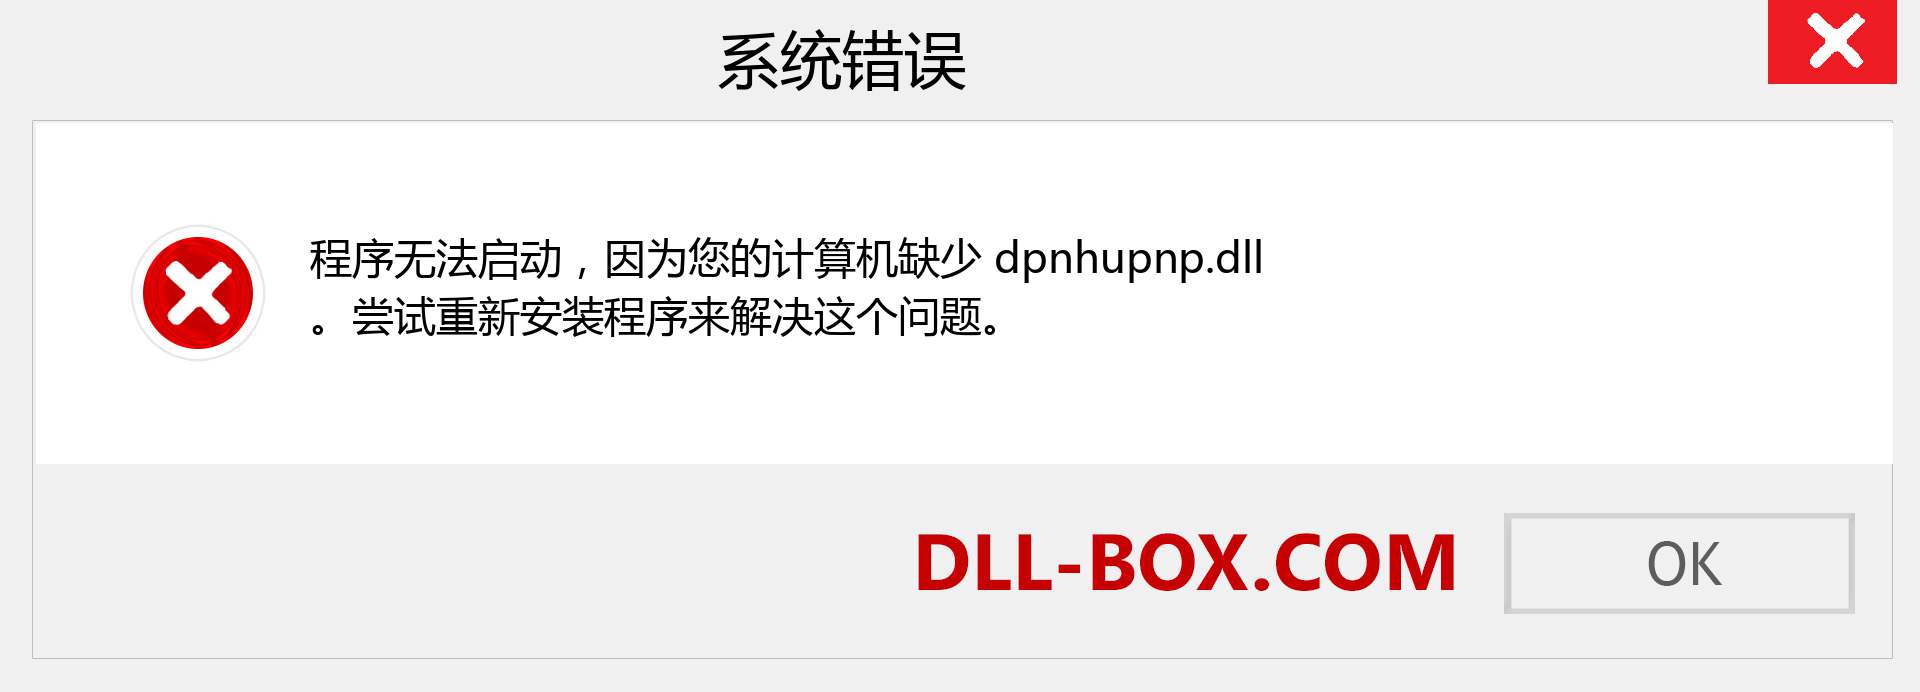 dpnhupnp.dll 文件丢失？。 适用于 Windows 7、8、10 的下载 - 修复 Windows、照片、图像上的 dpnhupnp dll 丢失错误